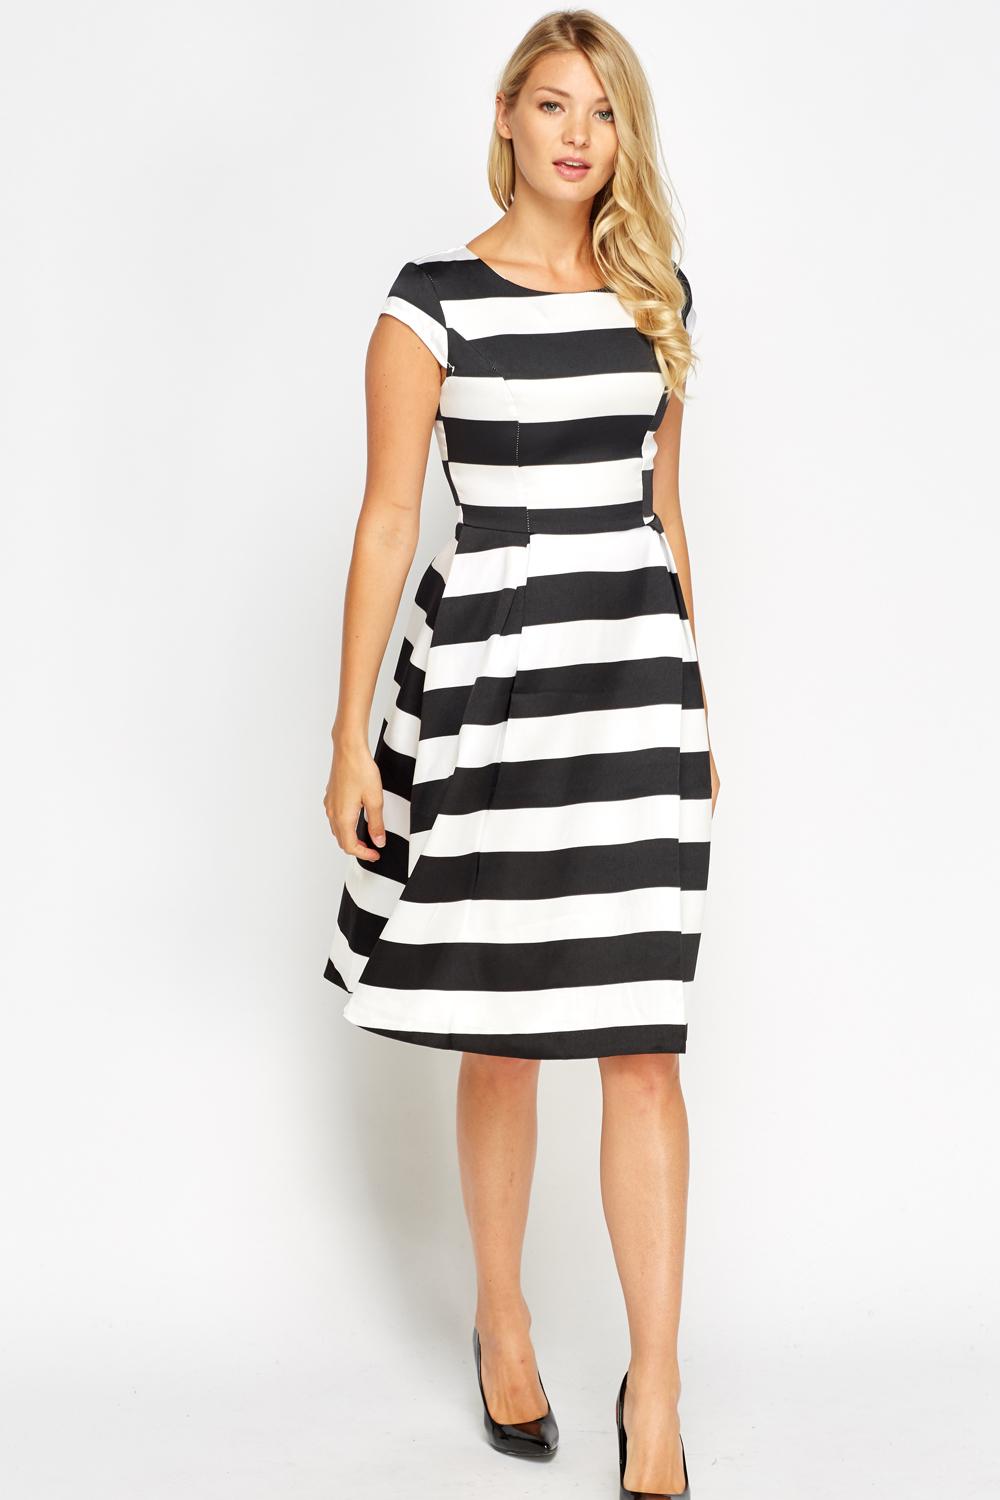 White Striped Skater Dress - Just $7